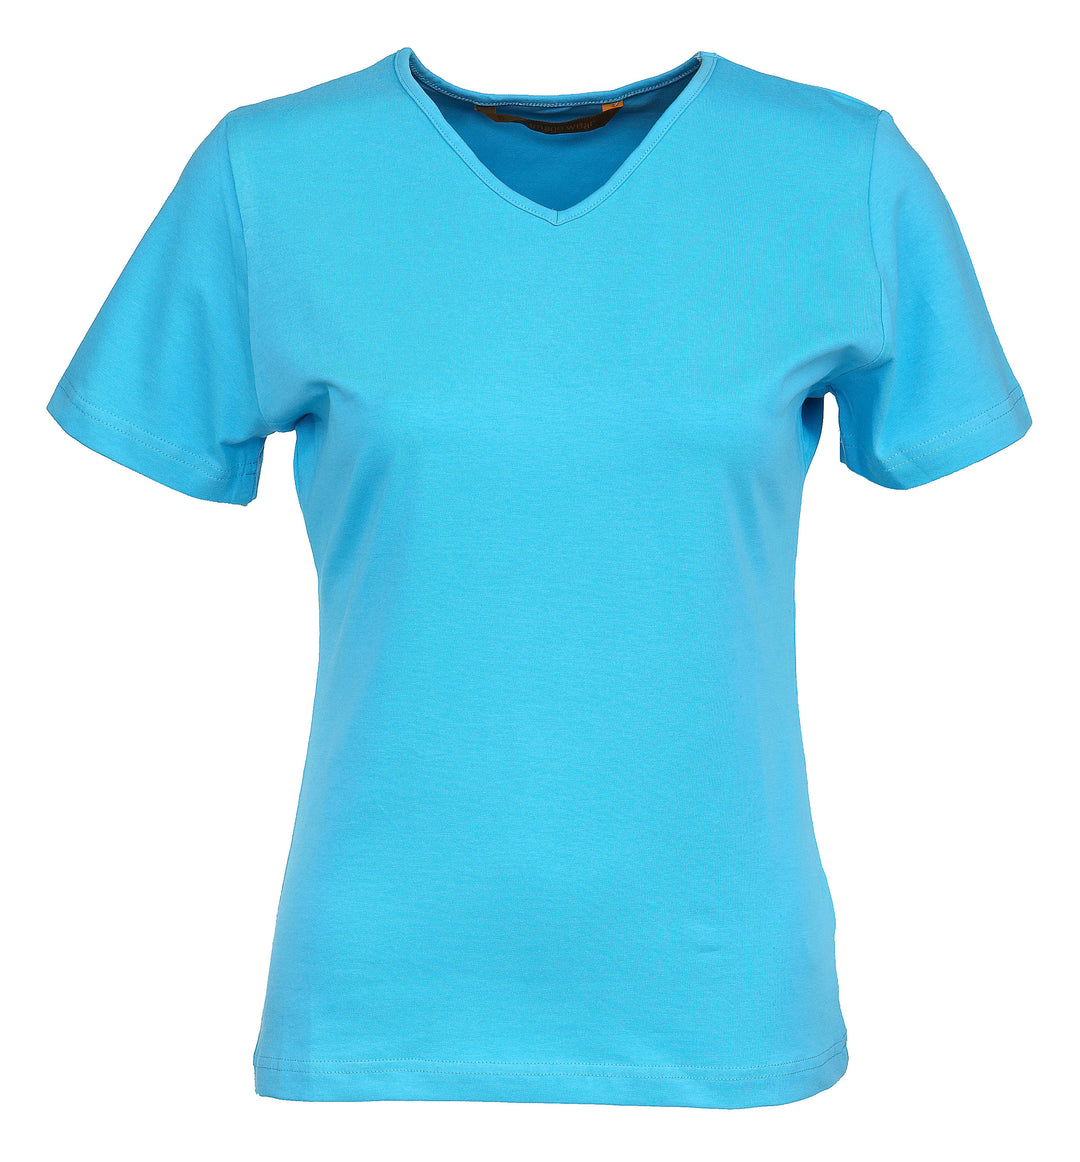 Turkoosi lyhythihainen naisten t-paita v-pääntiellä. Aavistuksen vartalonmyötäinen malli.